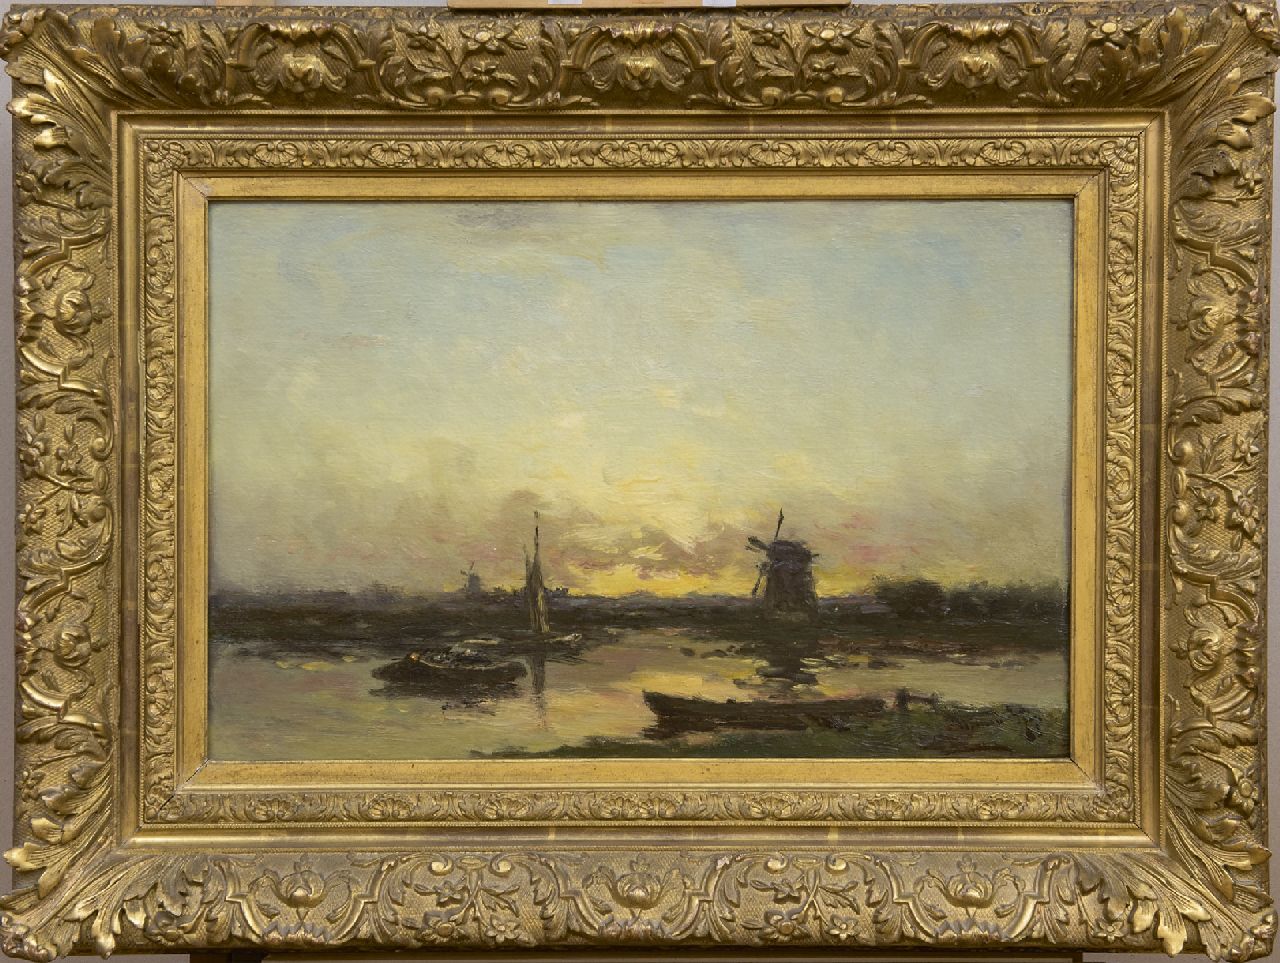 Rip W.C.  | 'Willem' Cornelis Rip | Schilderijen te koop aangeboden | Poldermolens en schuiten bij zonsondergang, olieverf op doek 36,9 x 55,5 cm, gesigneerd rechtsonder